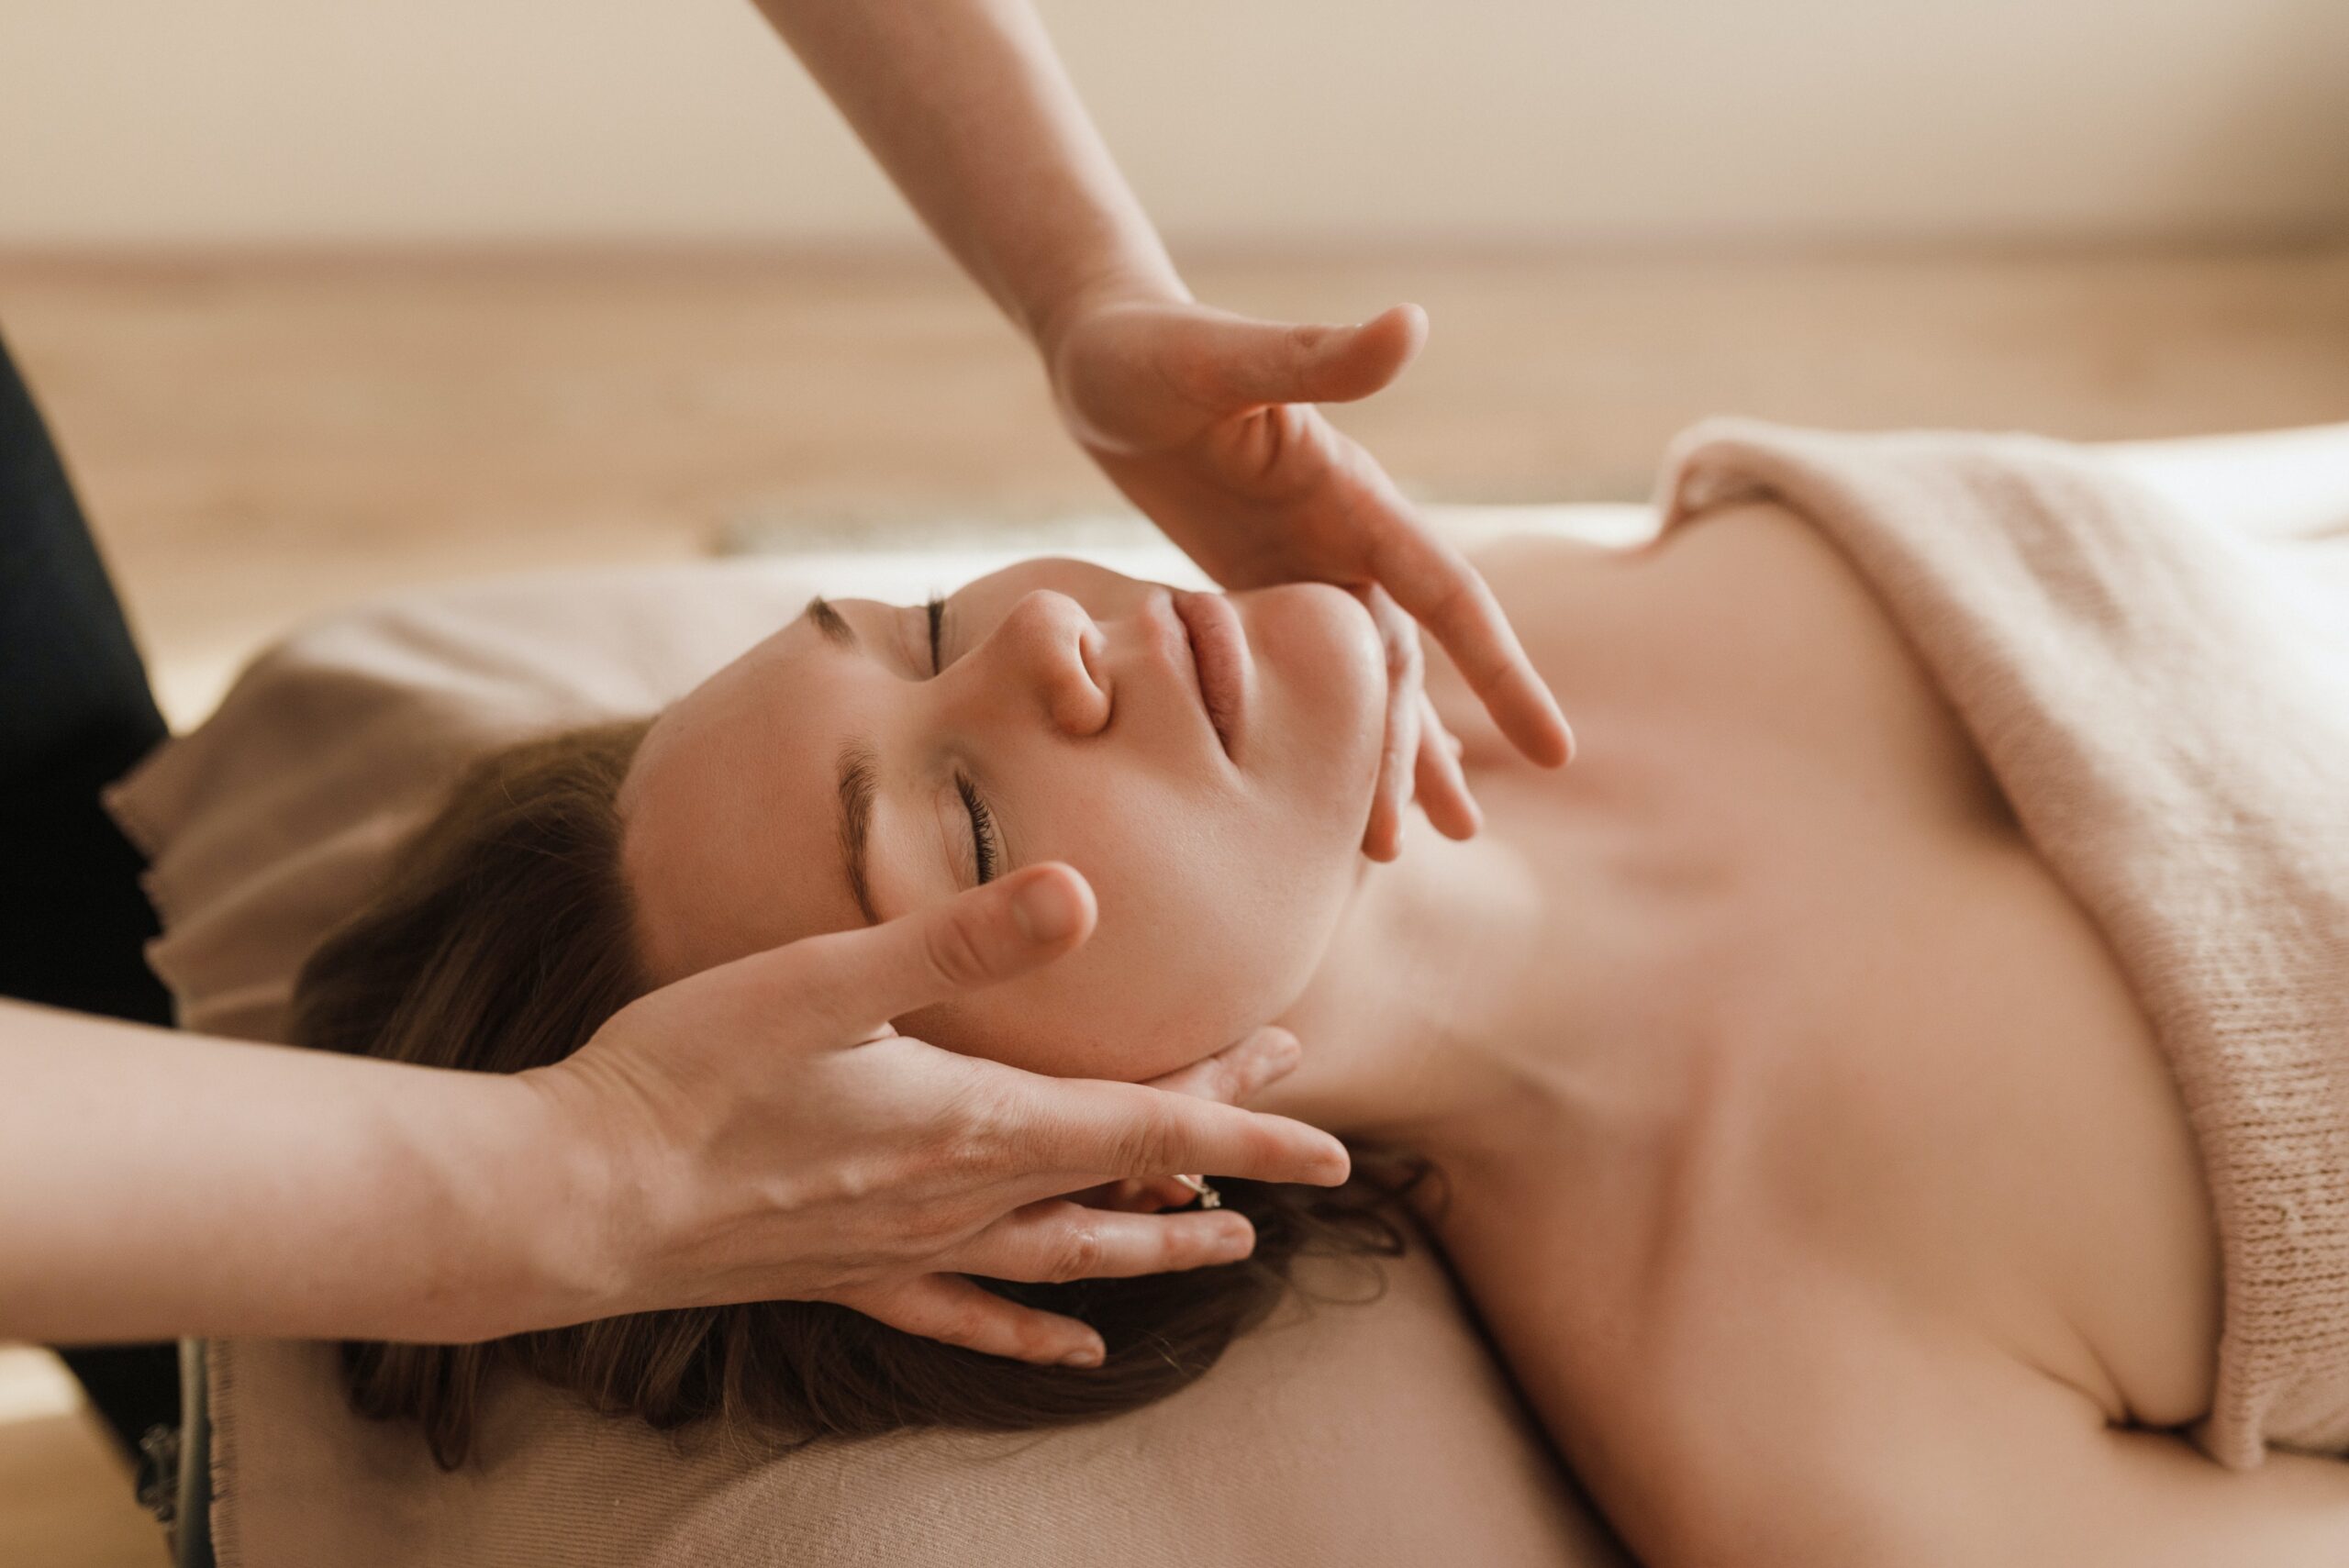 Women getting a facial massage 